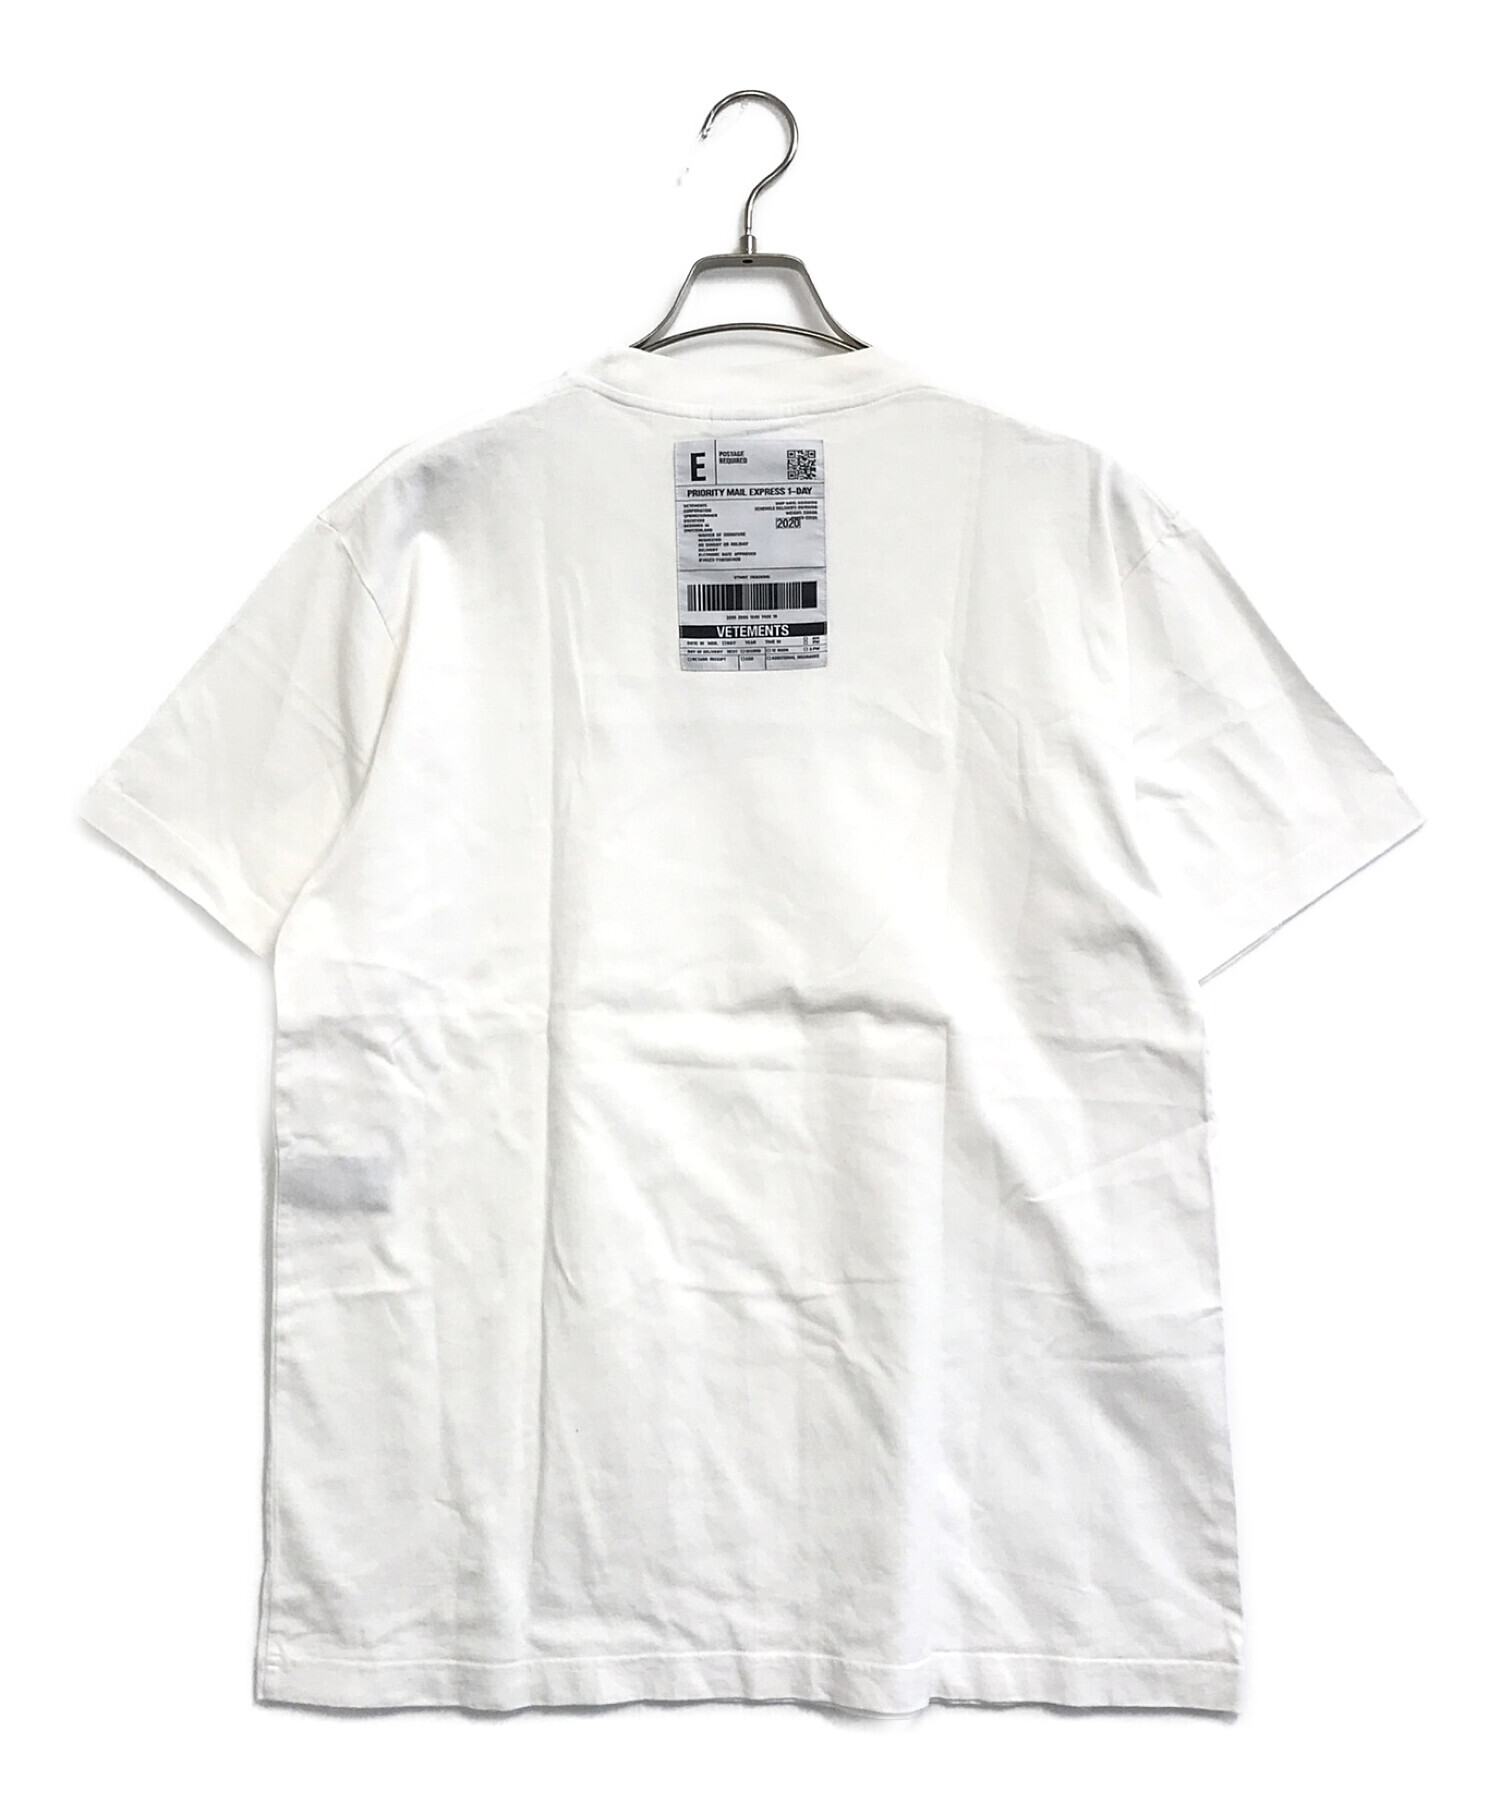 VETEMENTS (ヴェトモン) バーコードパッチロゴプリントTシャツ ホワイト サイズ:S